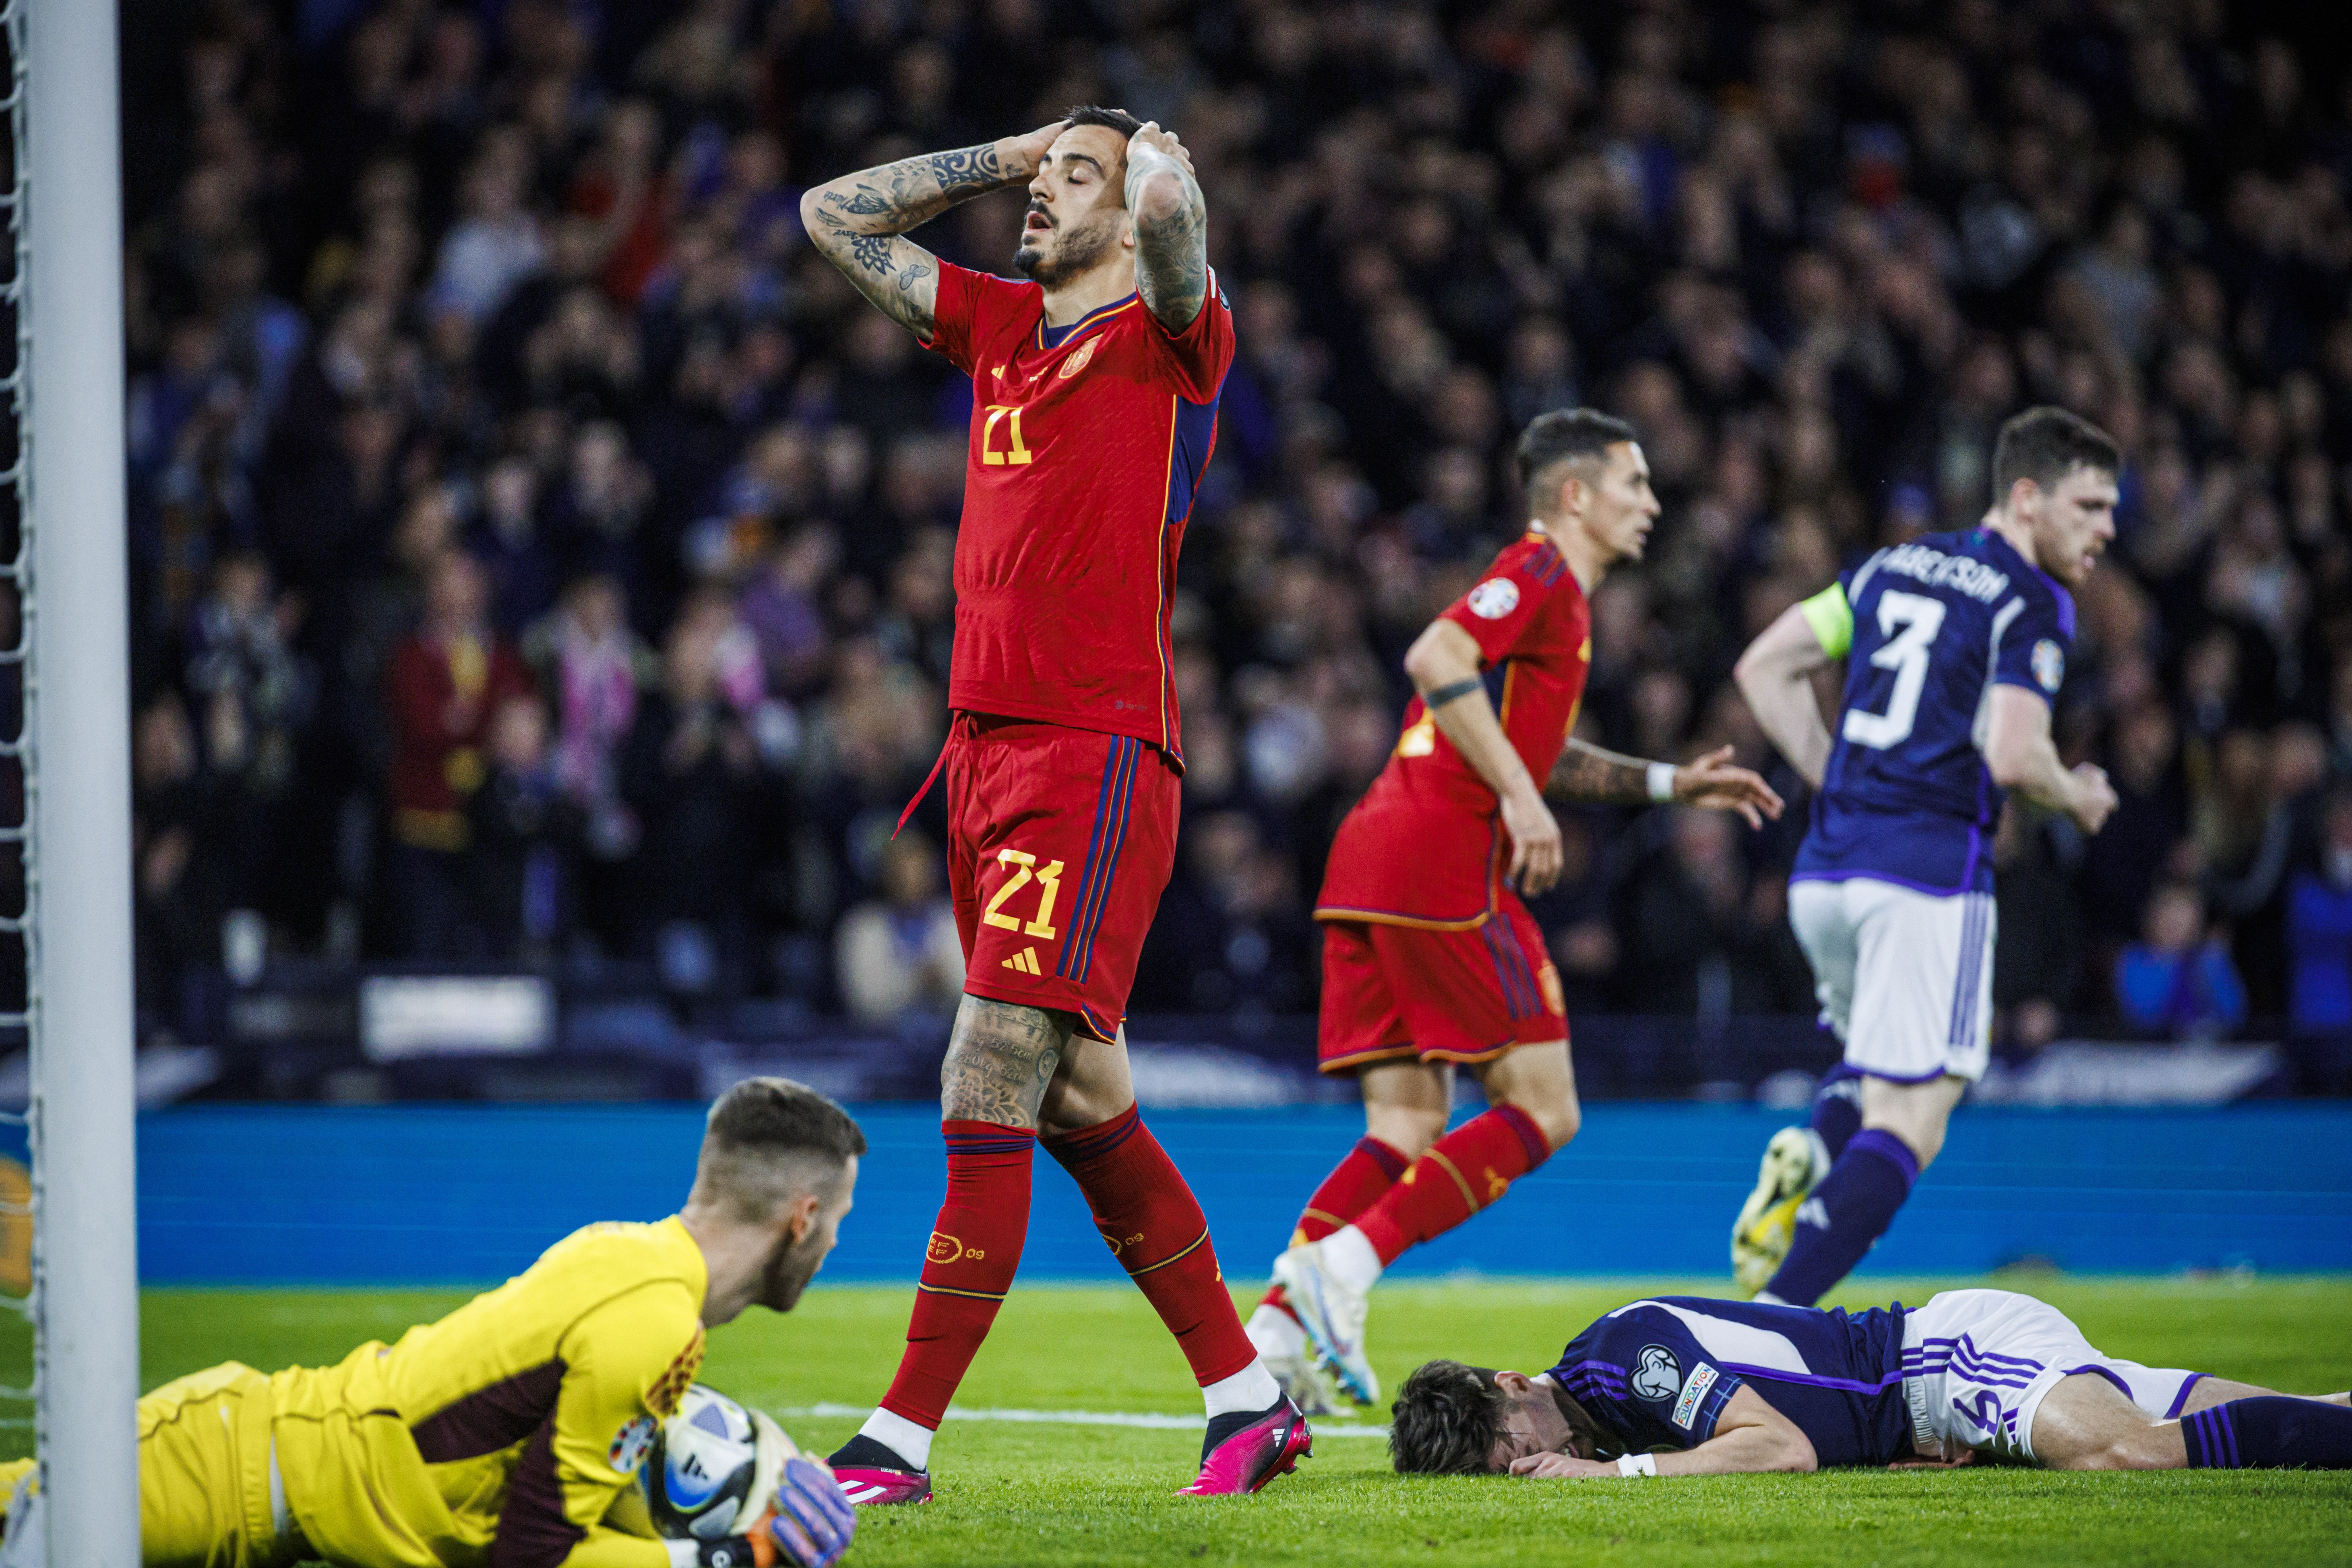 4 suspensos y 2 sorpresas inesperadas en la derrota de España contra Escocia (2-0)